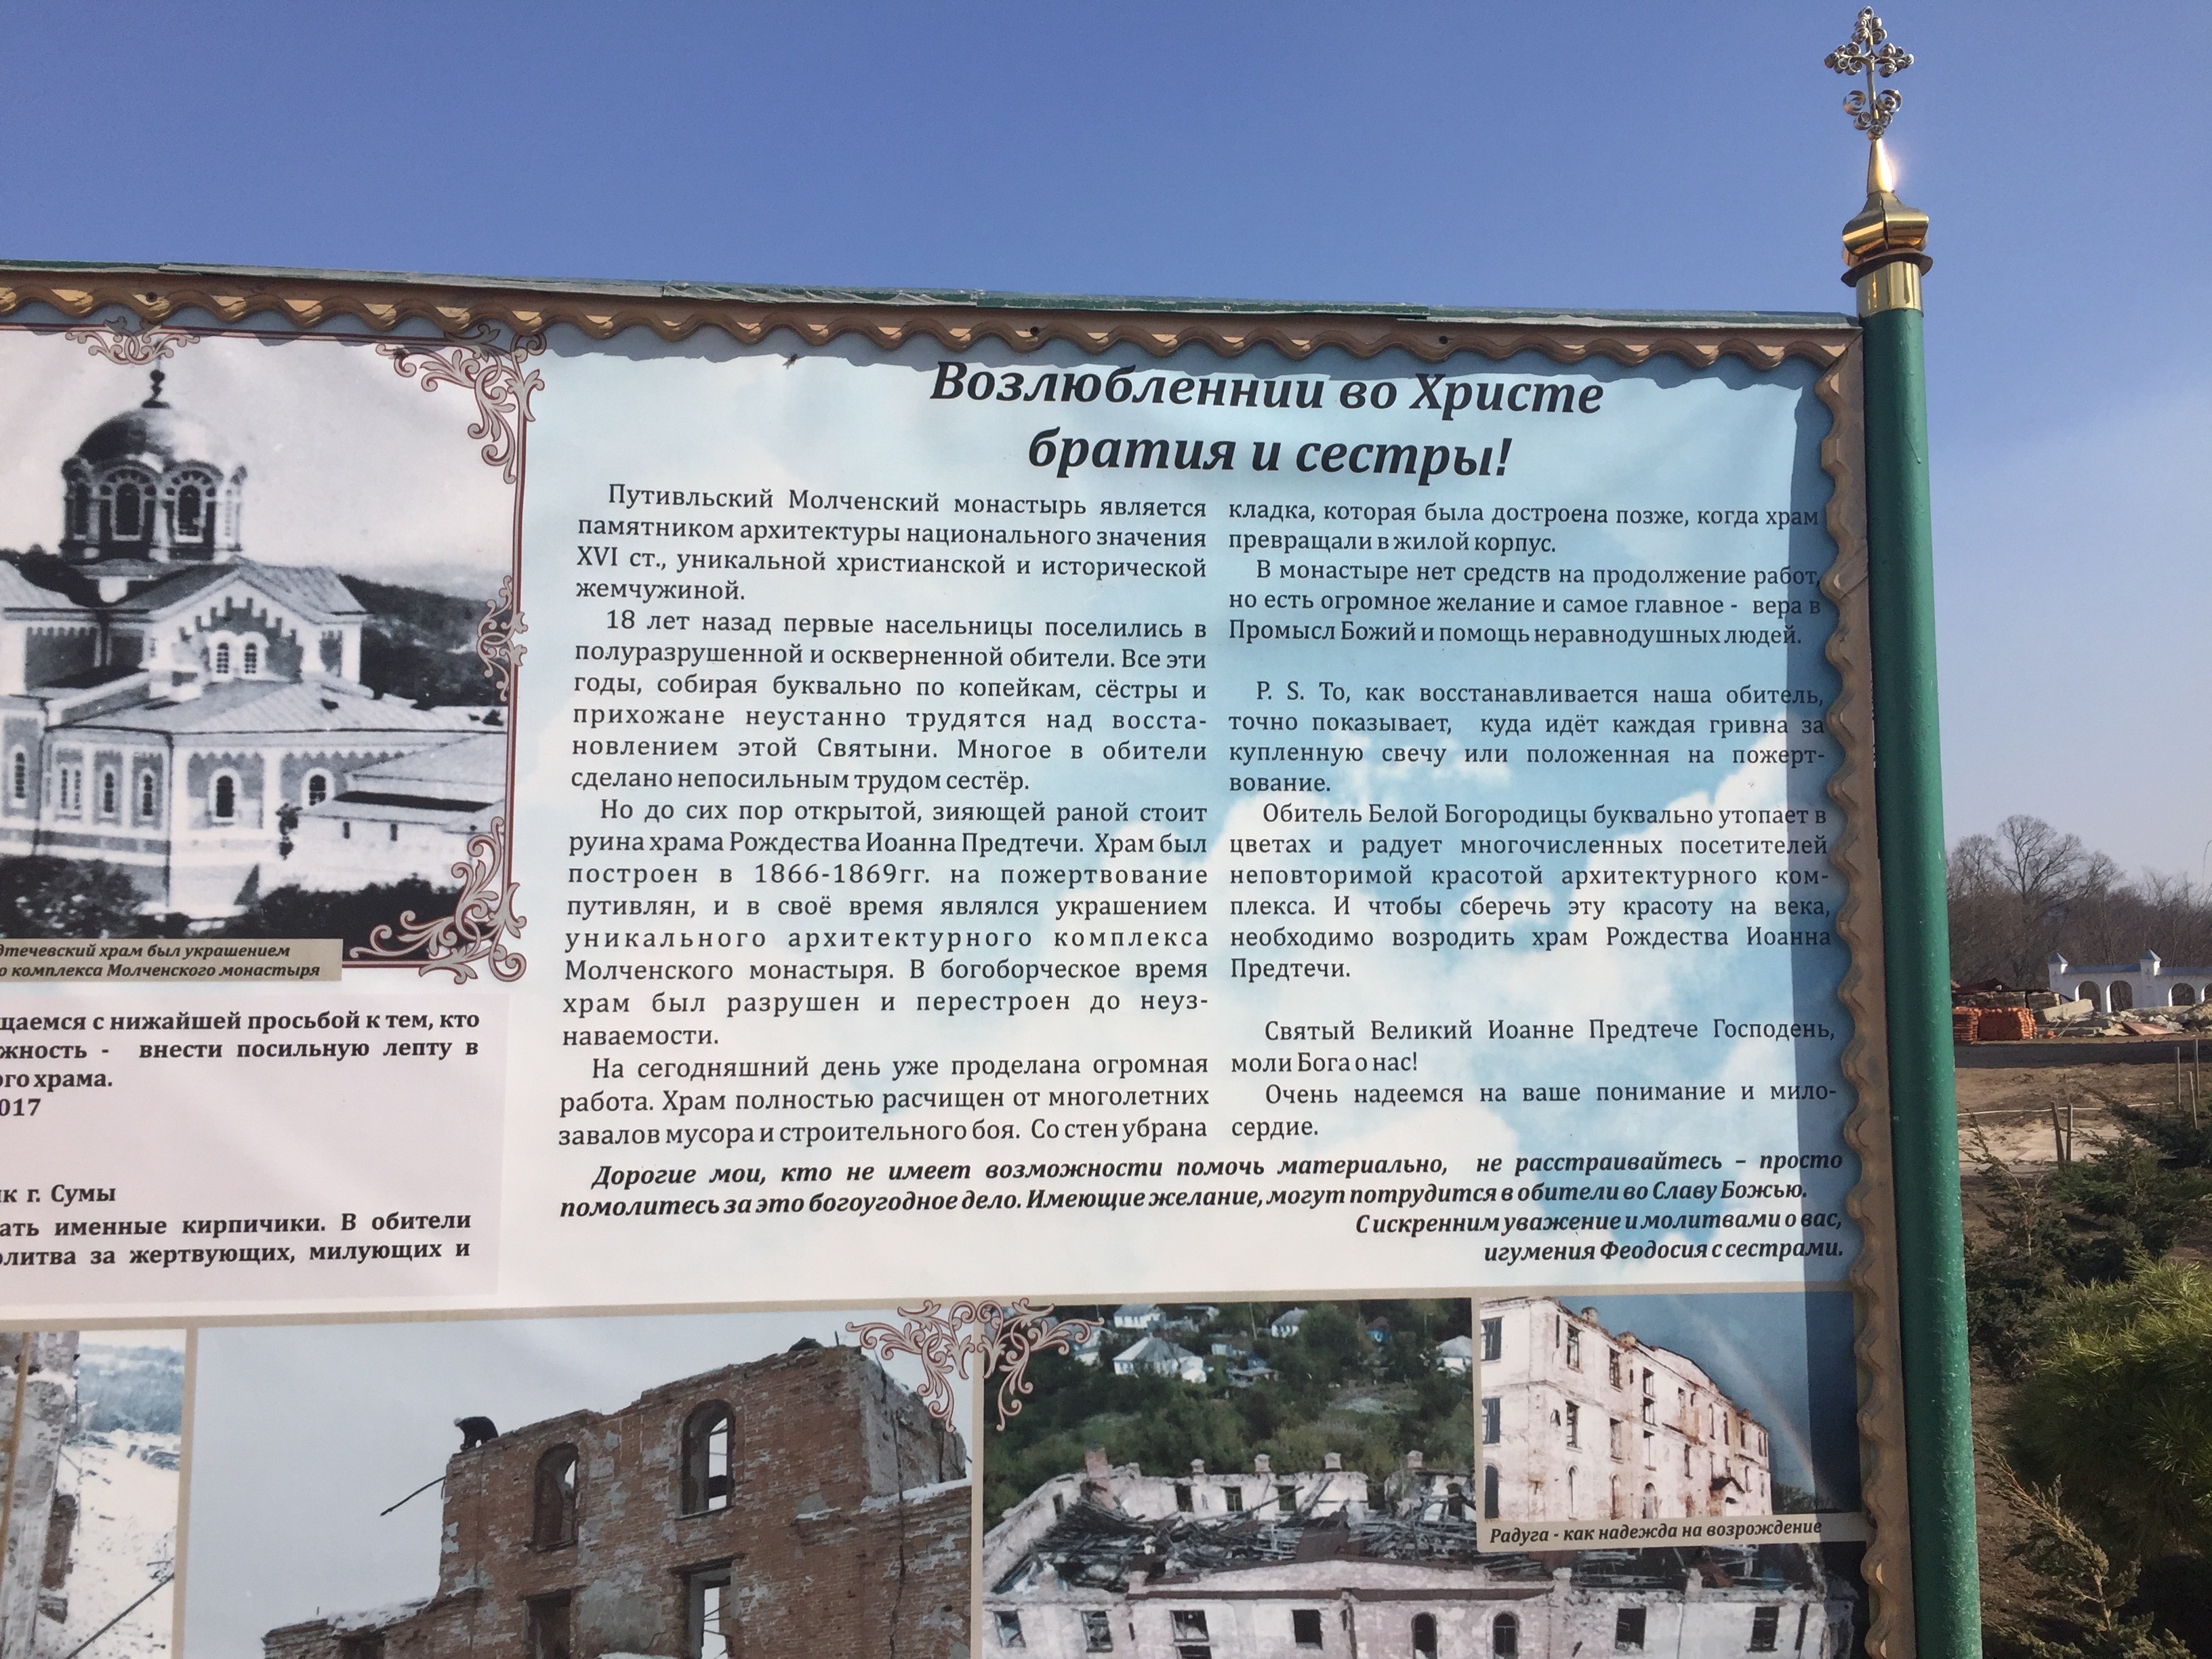 モルチェンスキー修道院についての説明の看板